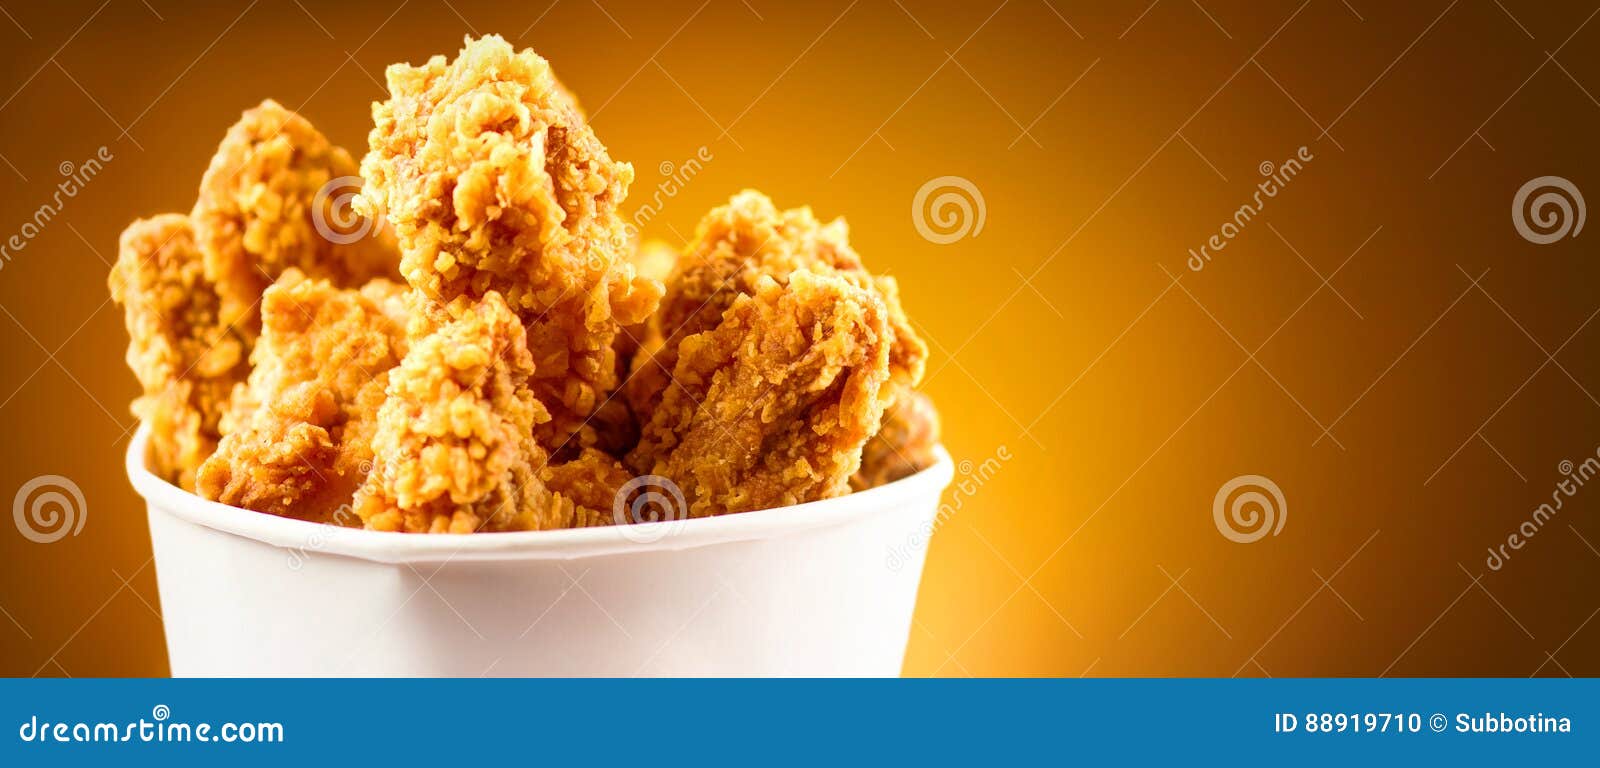 fried chicken wings. bucket full of crispy kentucky fried chicken